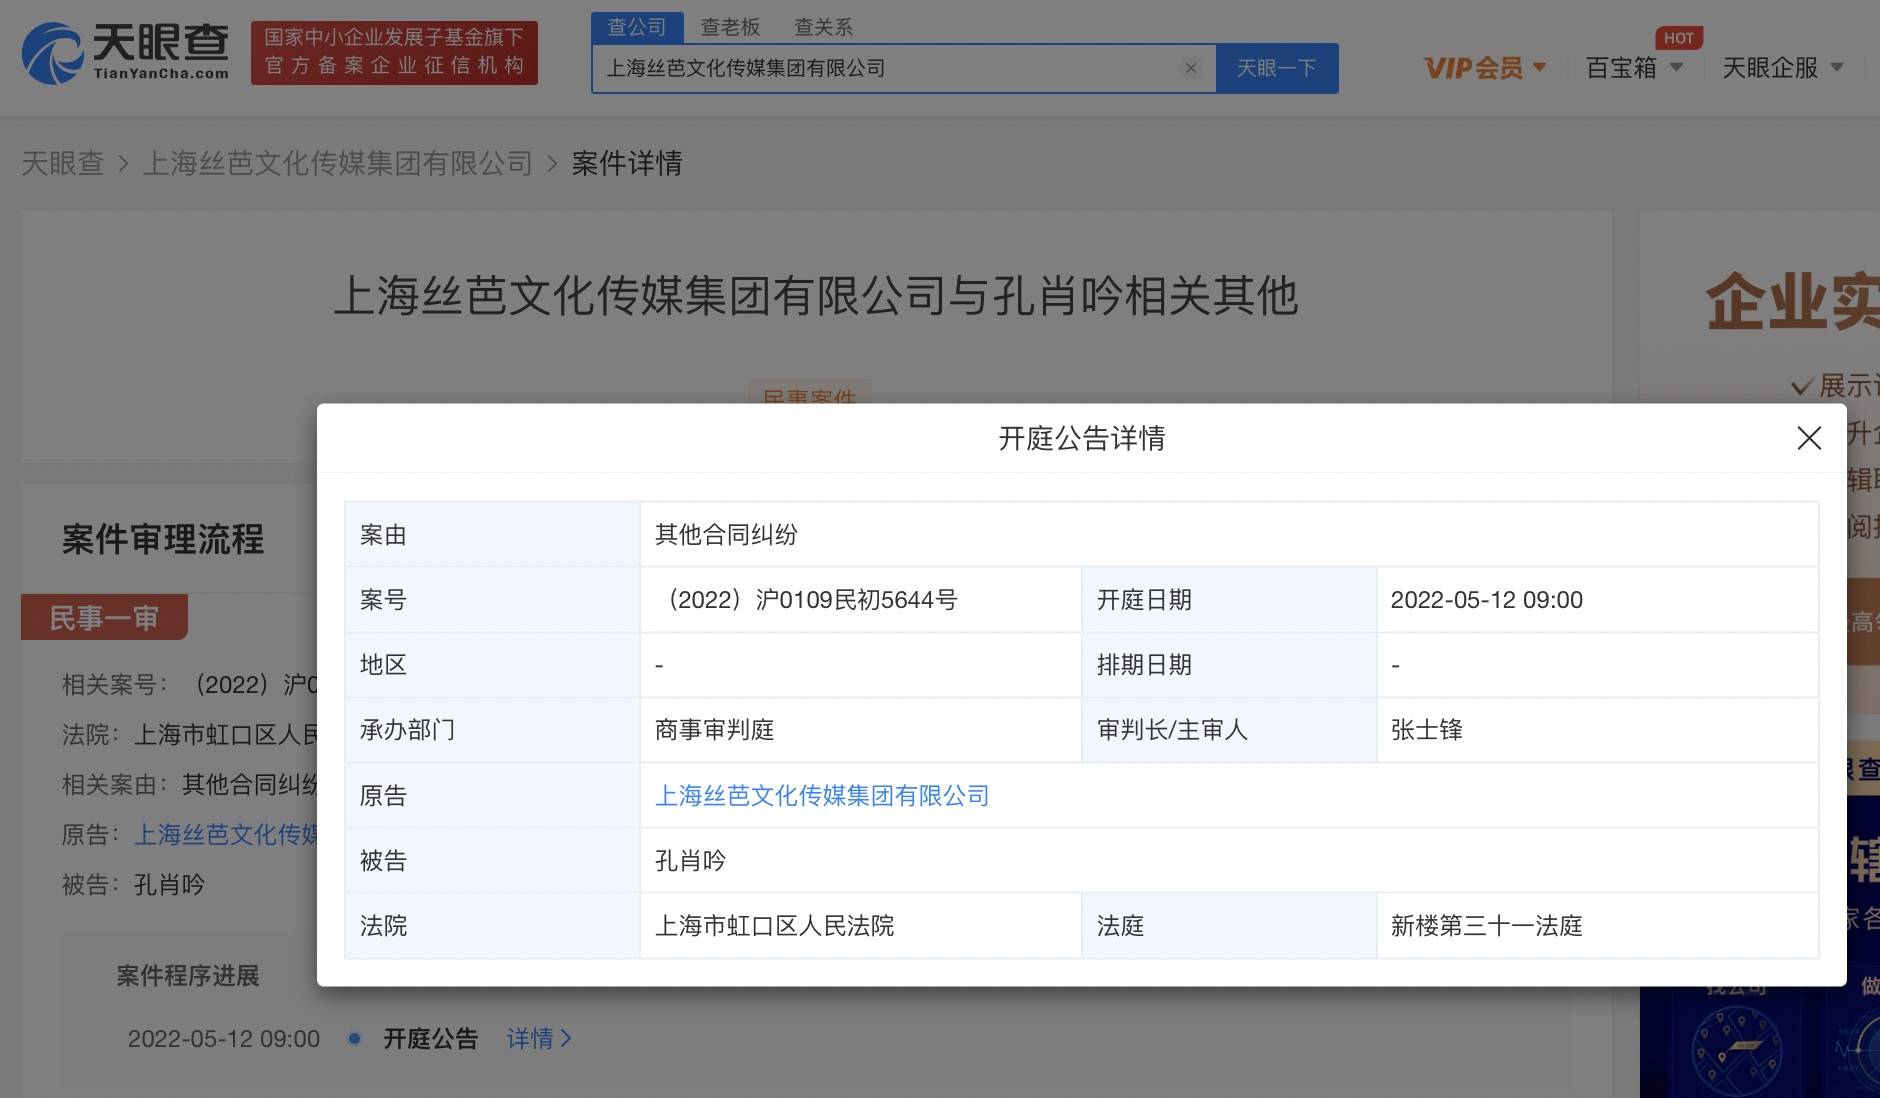 丝芭传媒因合同纠纷起诉孔肖吟 将在上海市虹口区人民法院开庭